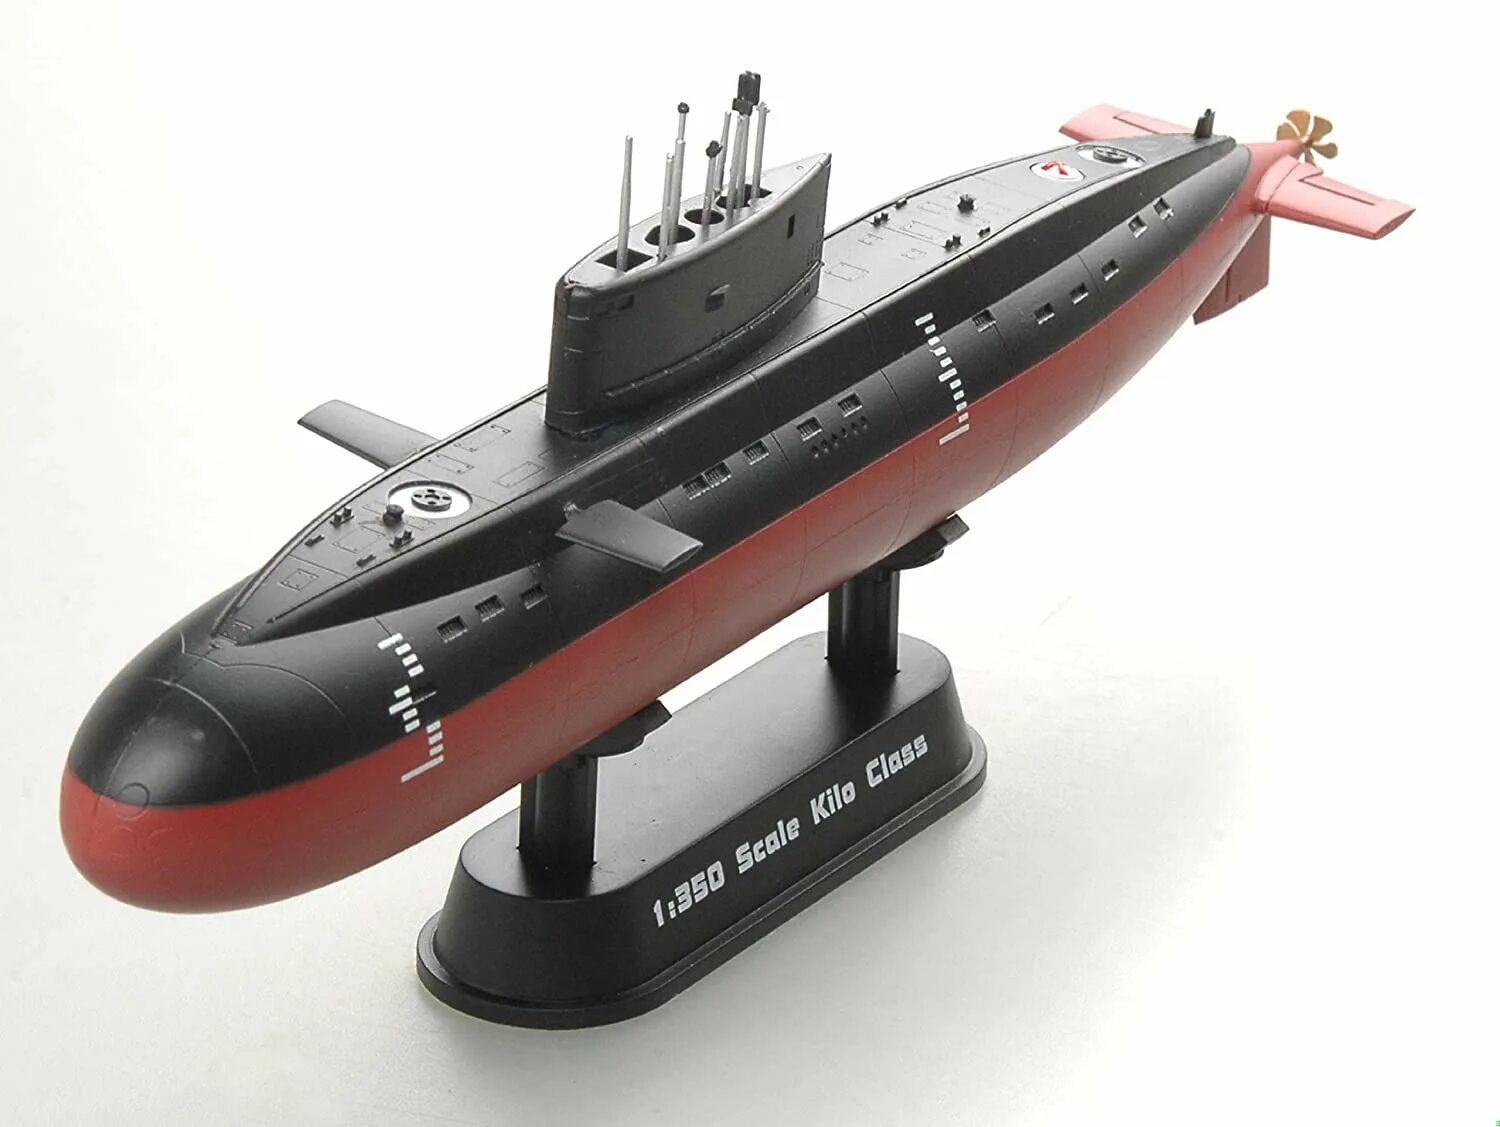 Сборная модель Моделист подводная лодка "Варшавянка" (140055) 1:400. Коллекционные модели лодок. Варшавянка модель. Модель подводной лодки Trumpeter, модель в масштабе 87021, 1/700. Сборные модели лодки